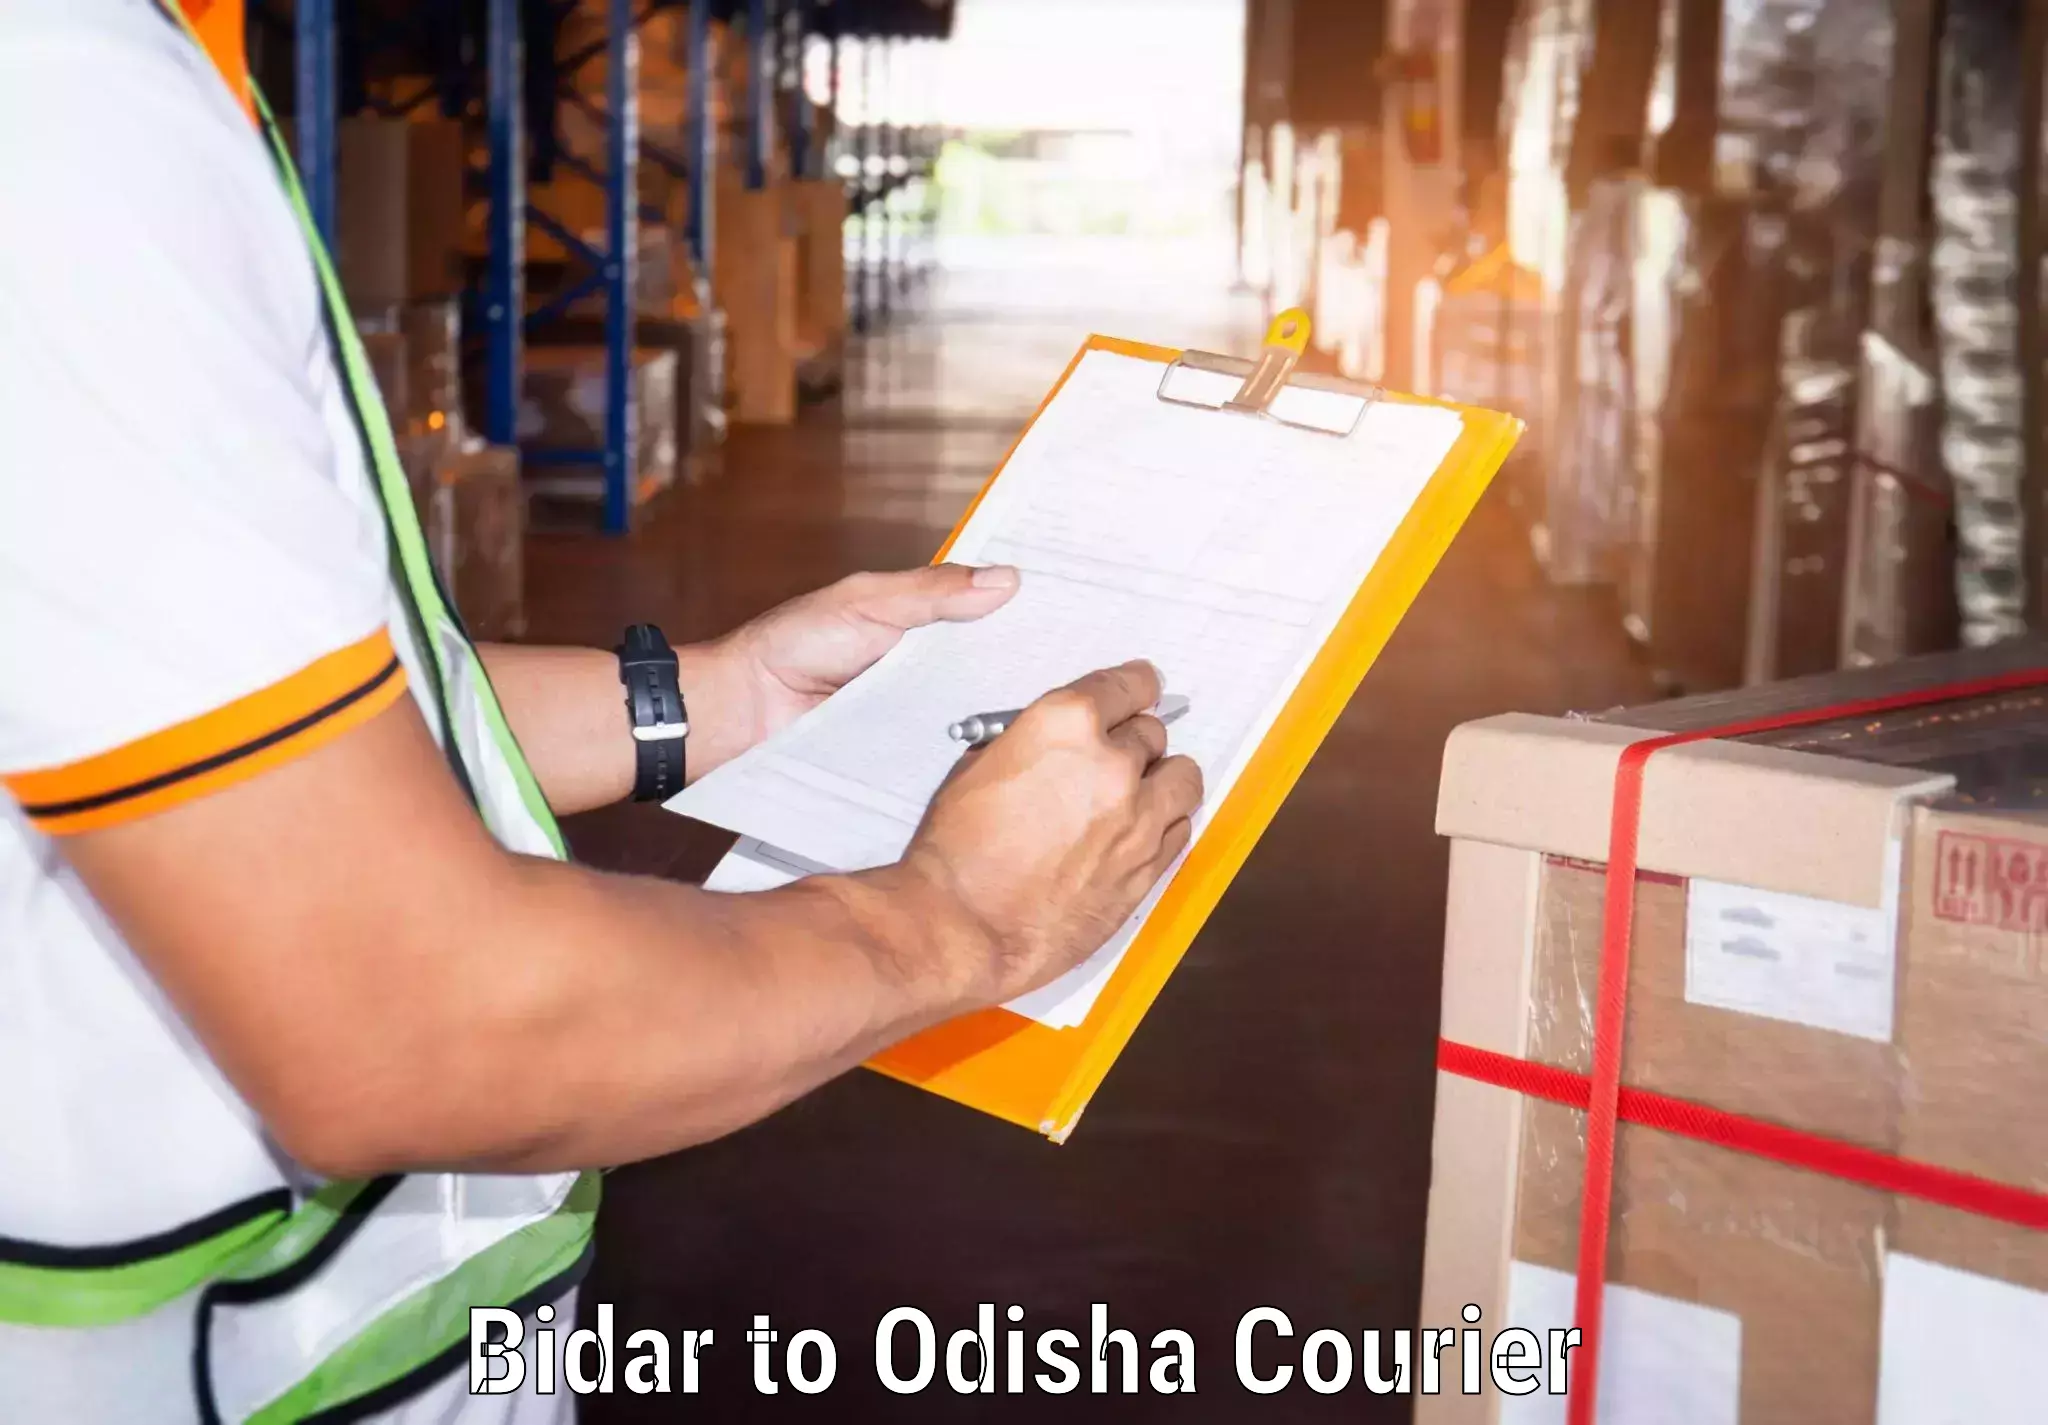 Automated parcel services Bidar to Bahalda